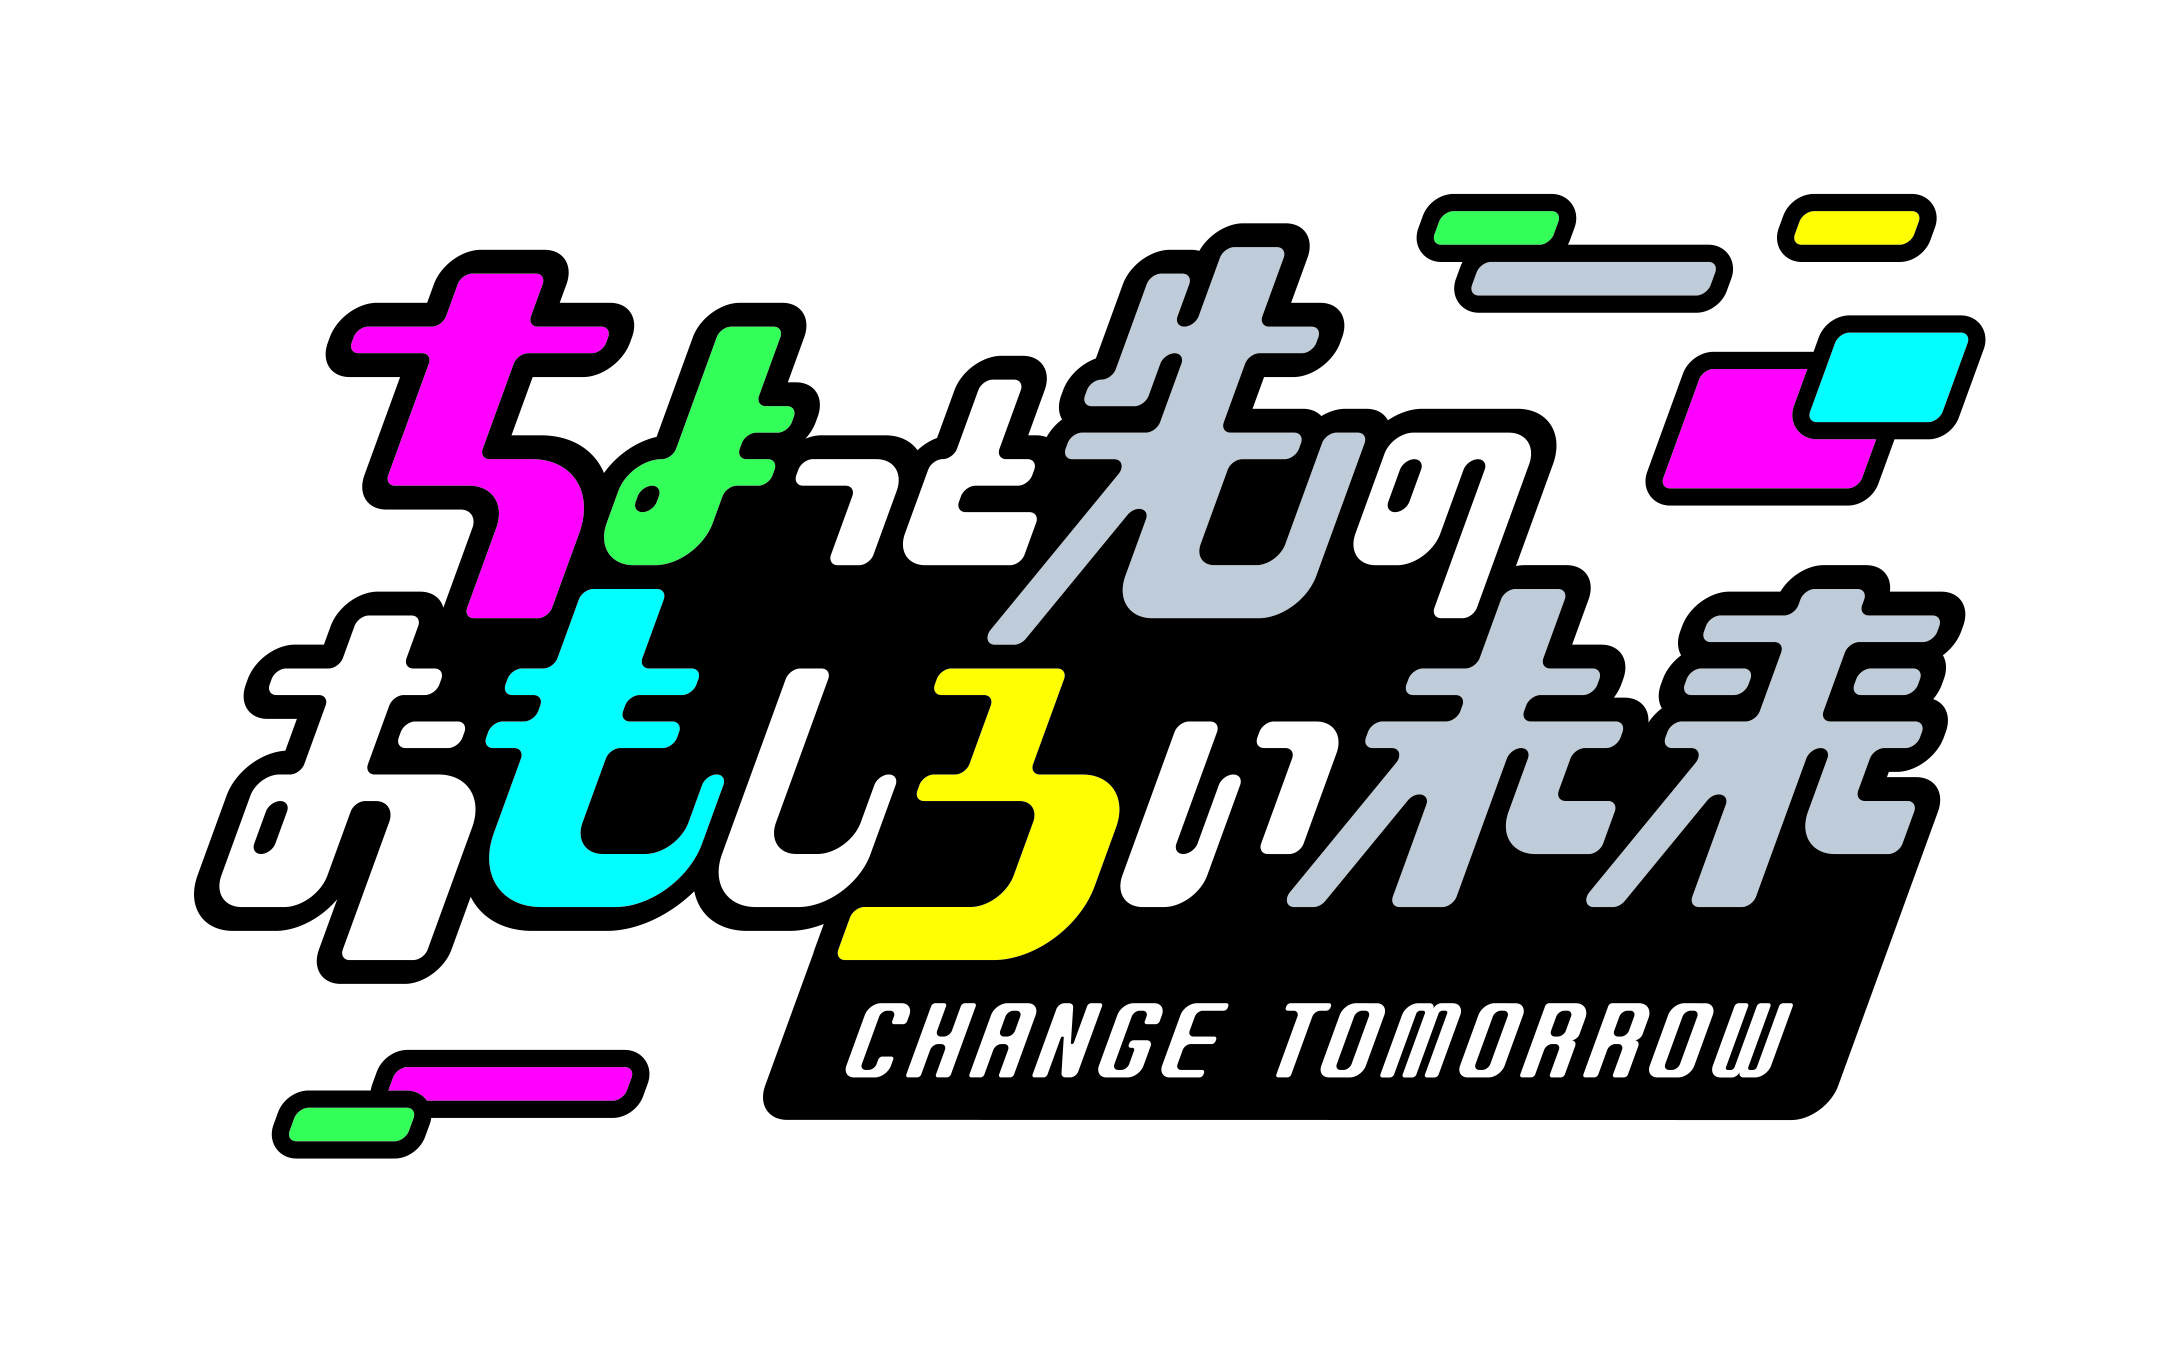 東京 竹芝こそが おもしろい未来の入口 人気芸人と一緒に未来を覗いてみよう ちょっと先のおもしろい未来 Change Tomorrow ちょもろー 吉本興業株式会社のプレスリリース